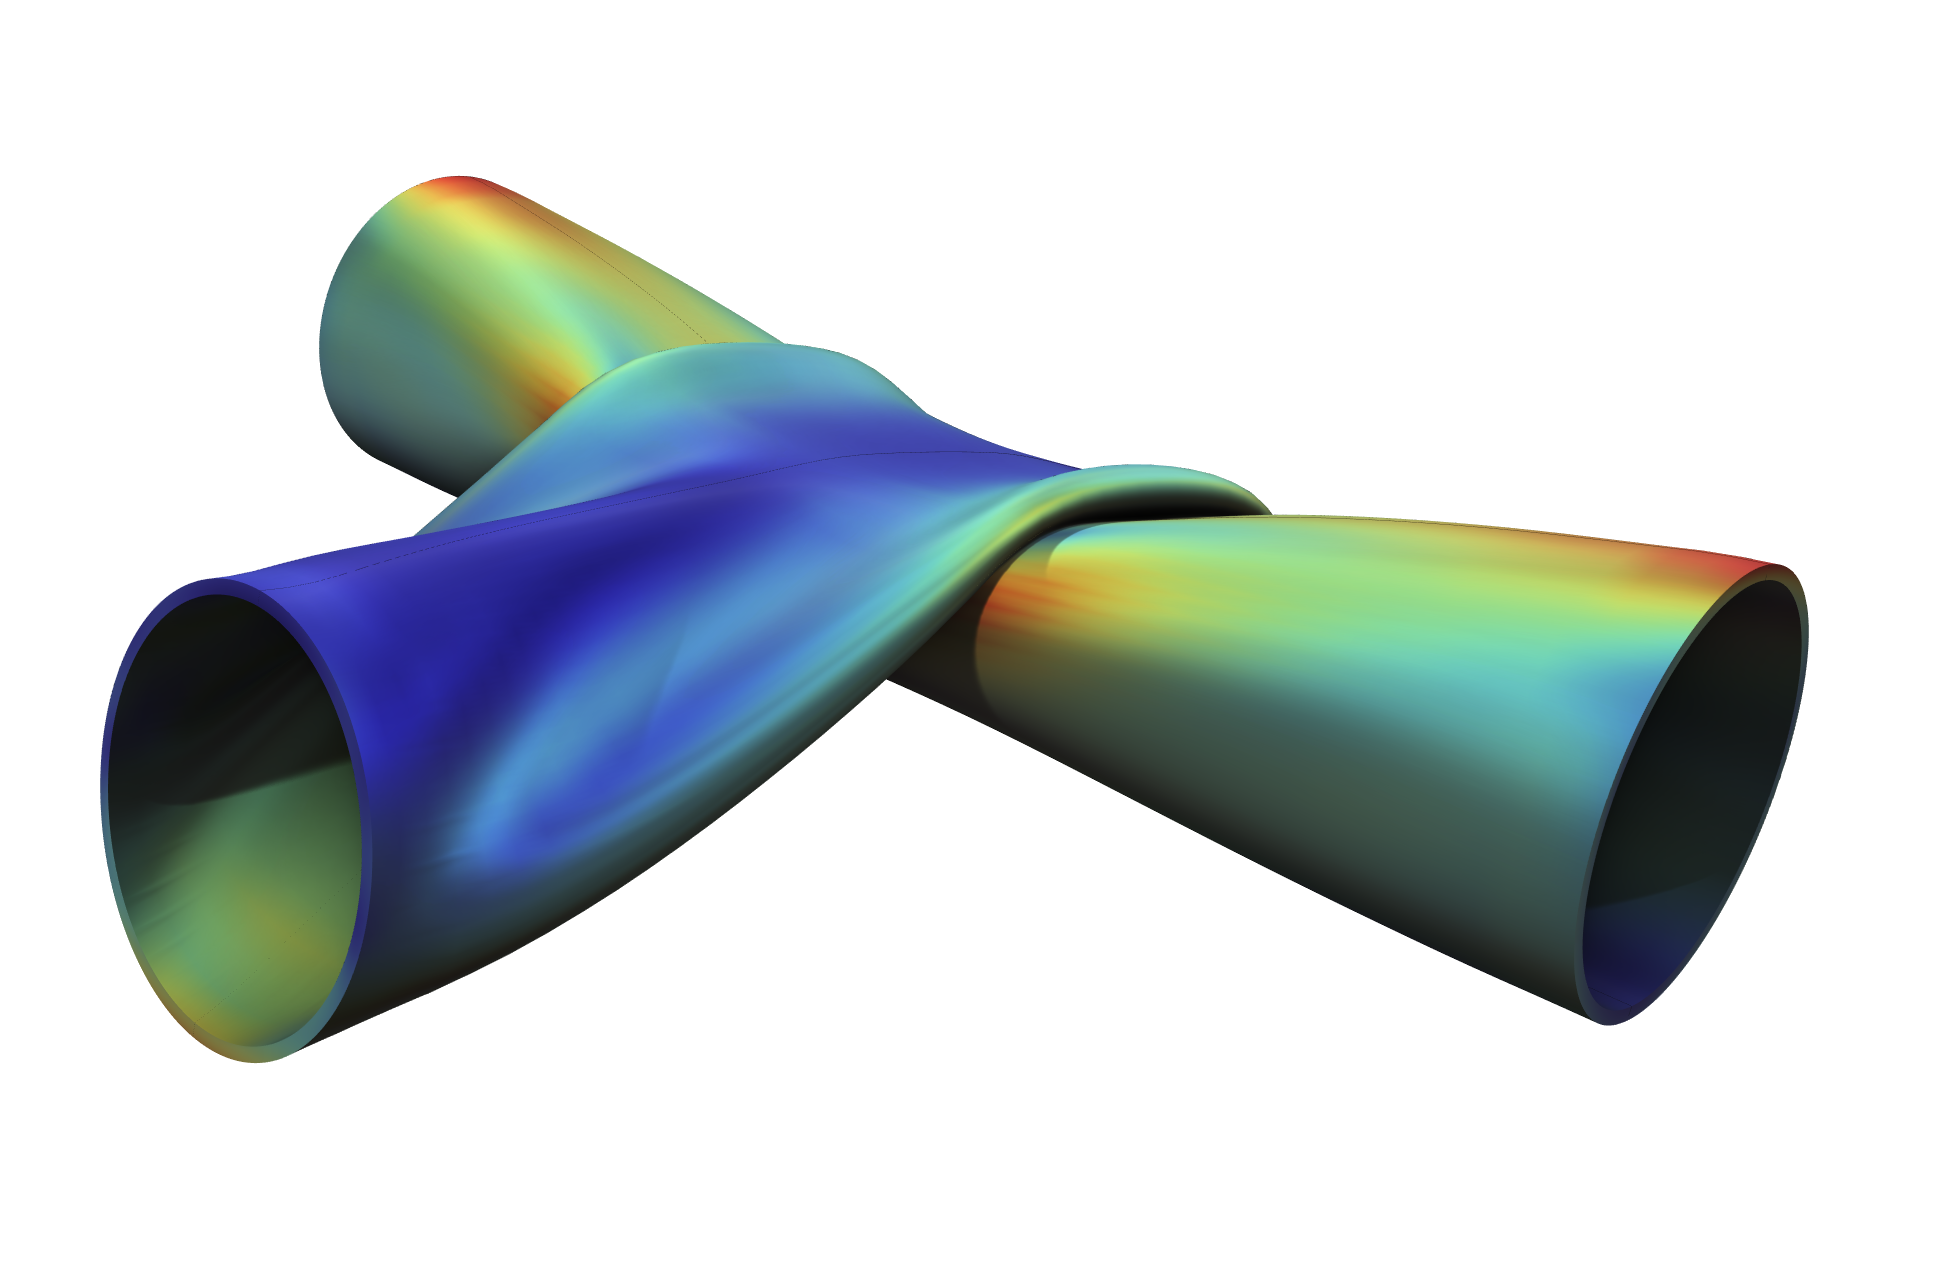 Une analyse structurelle permet de visualiser les contraintes et les déformations de deux tubes métalliques en contact mécanique.